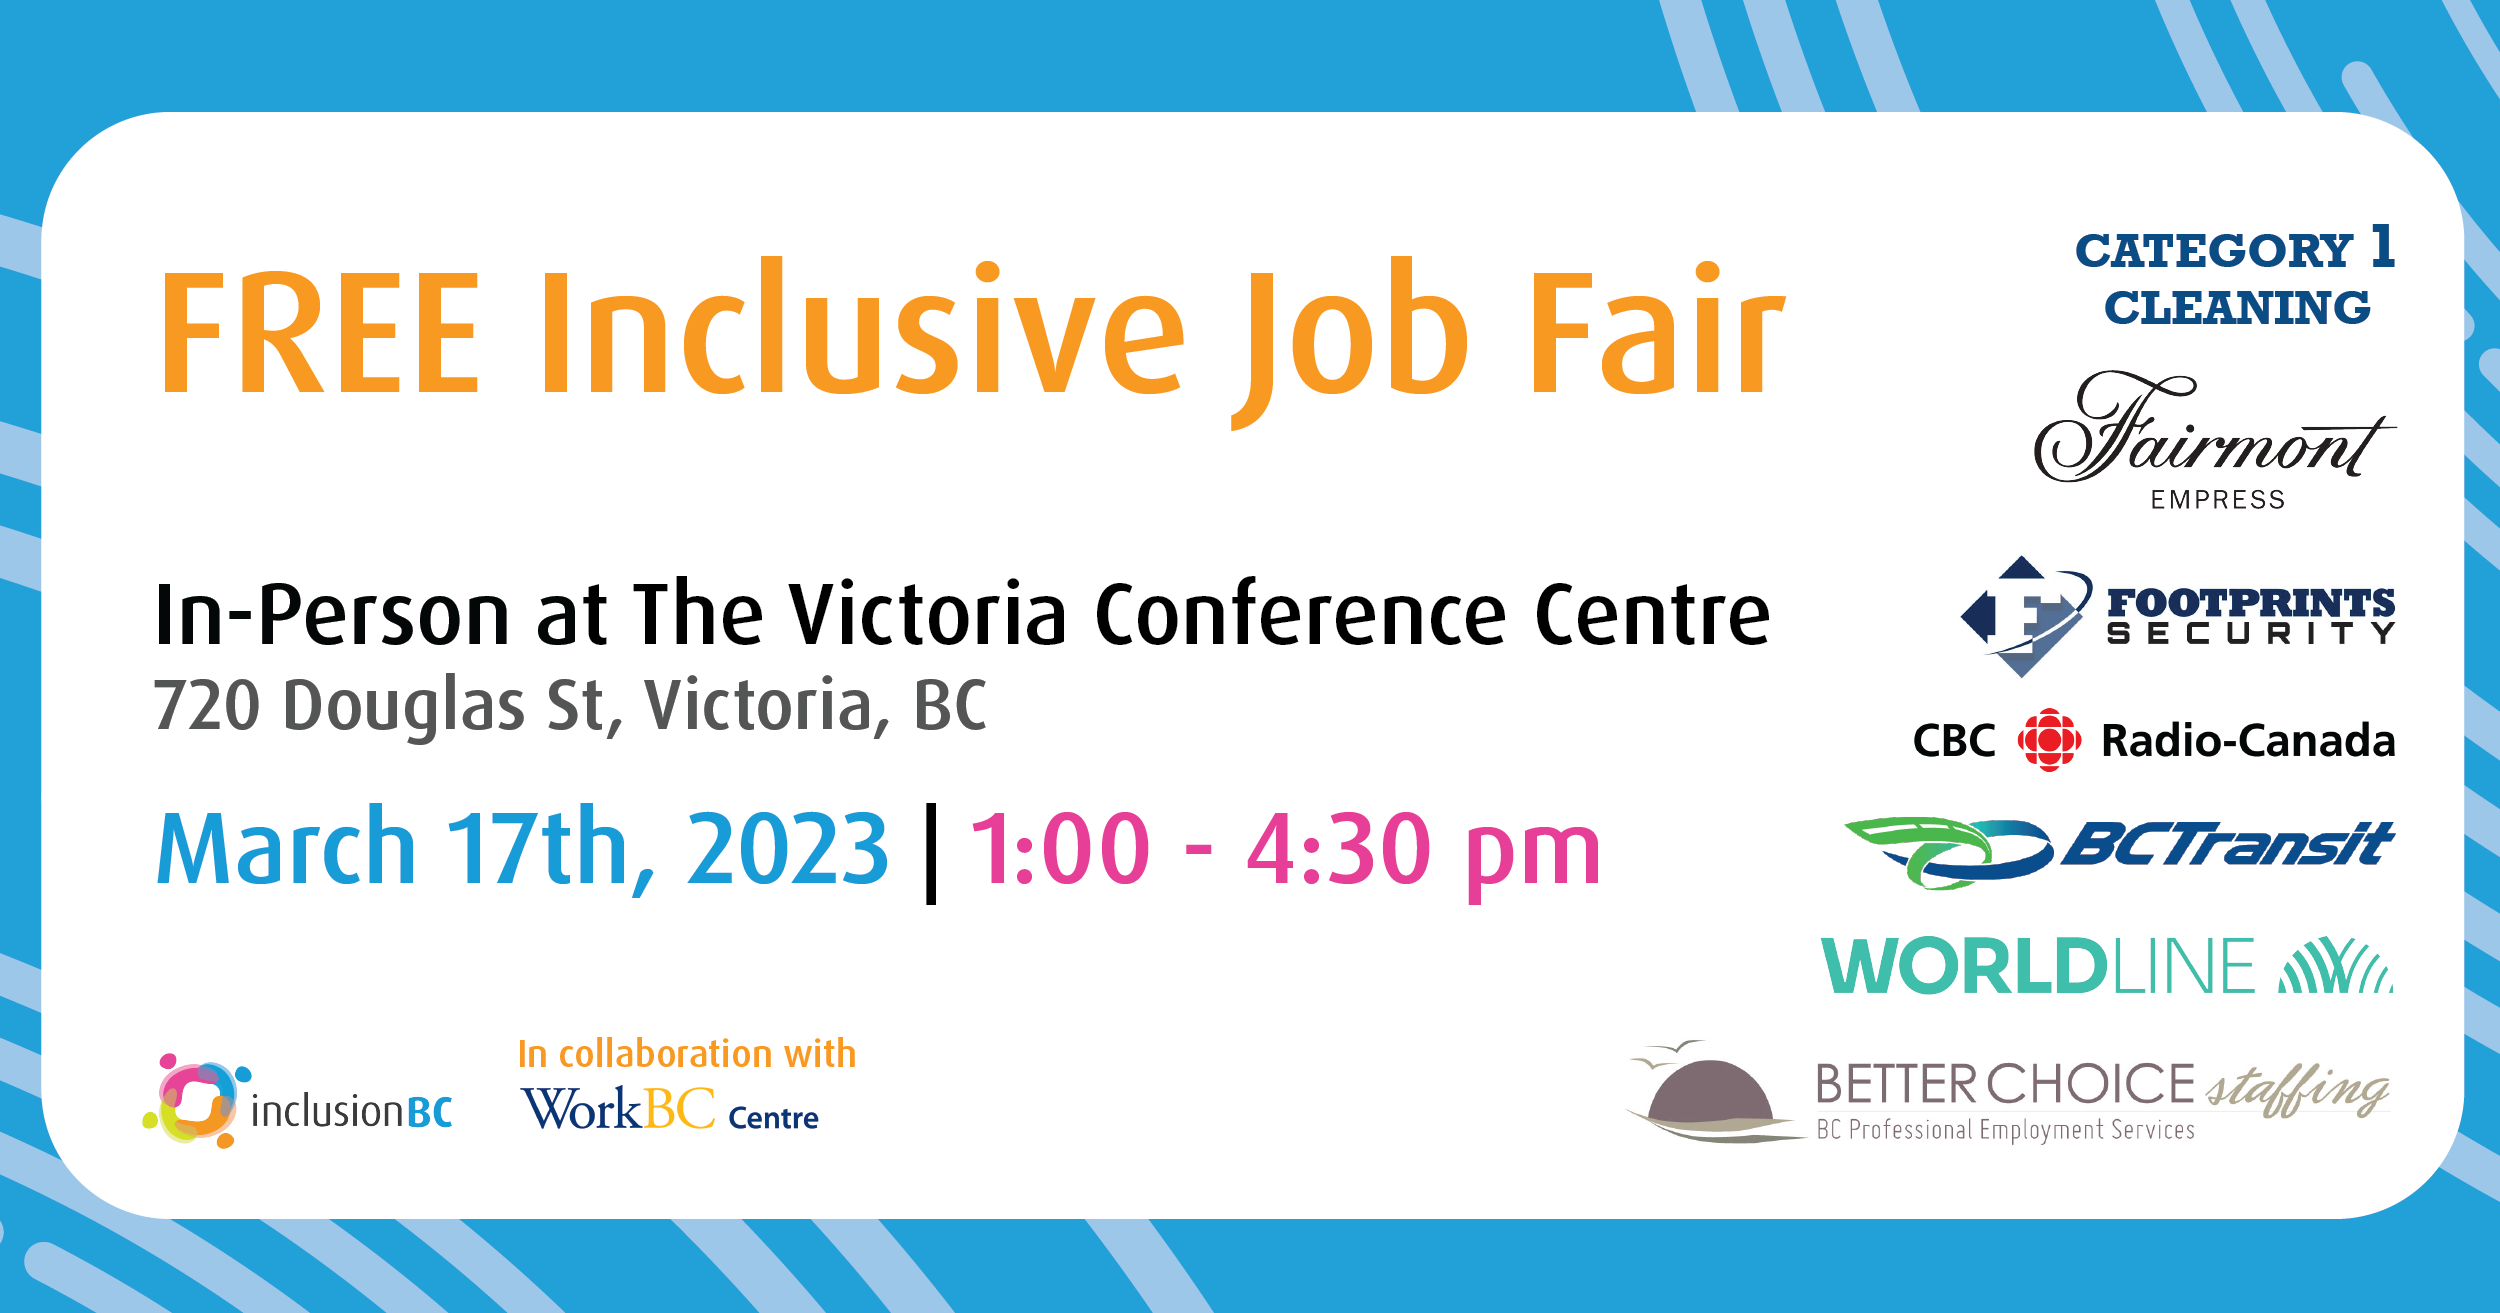 free inclusive job fair. Victoria Conference Centre. March 17th, 1-4:30 pm